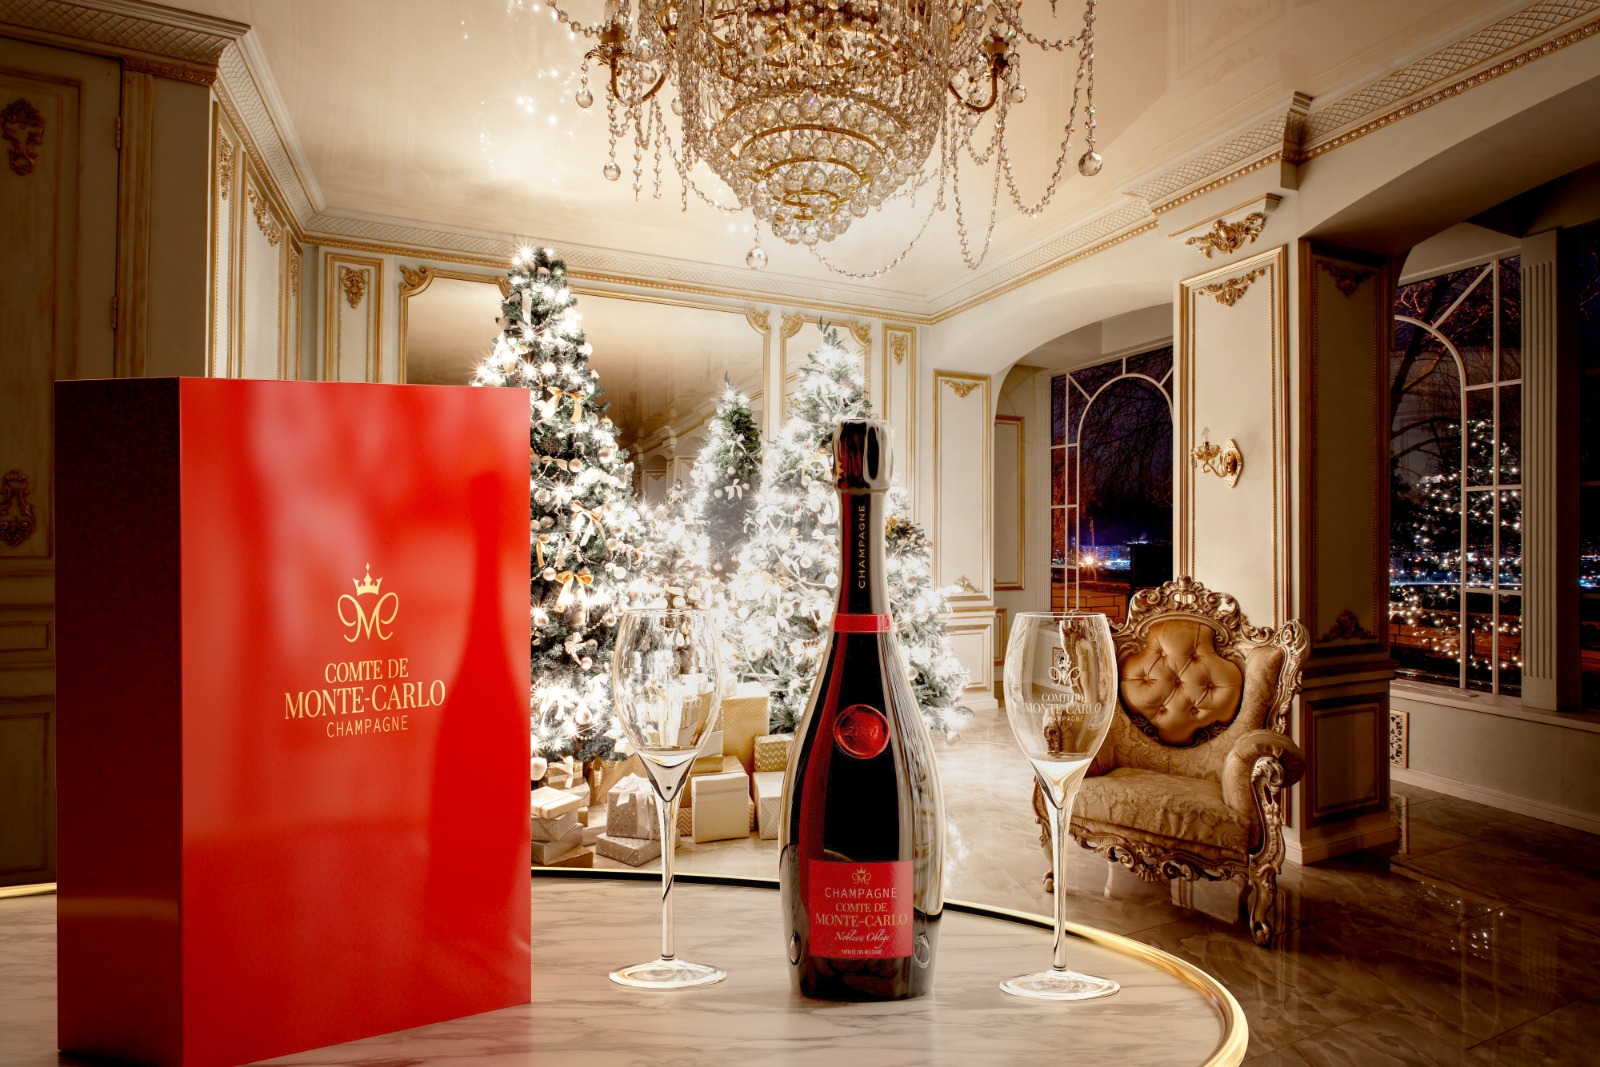 Baron de Monte-Carlo and the Champagne brand Comte de Monte-Carlo.